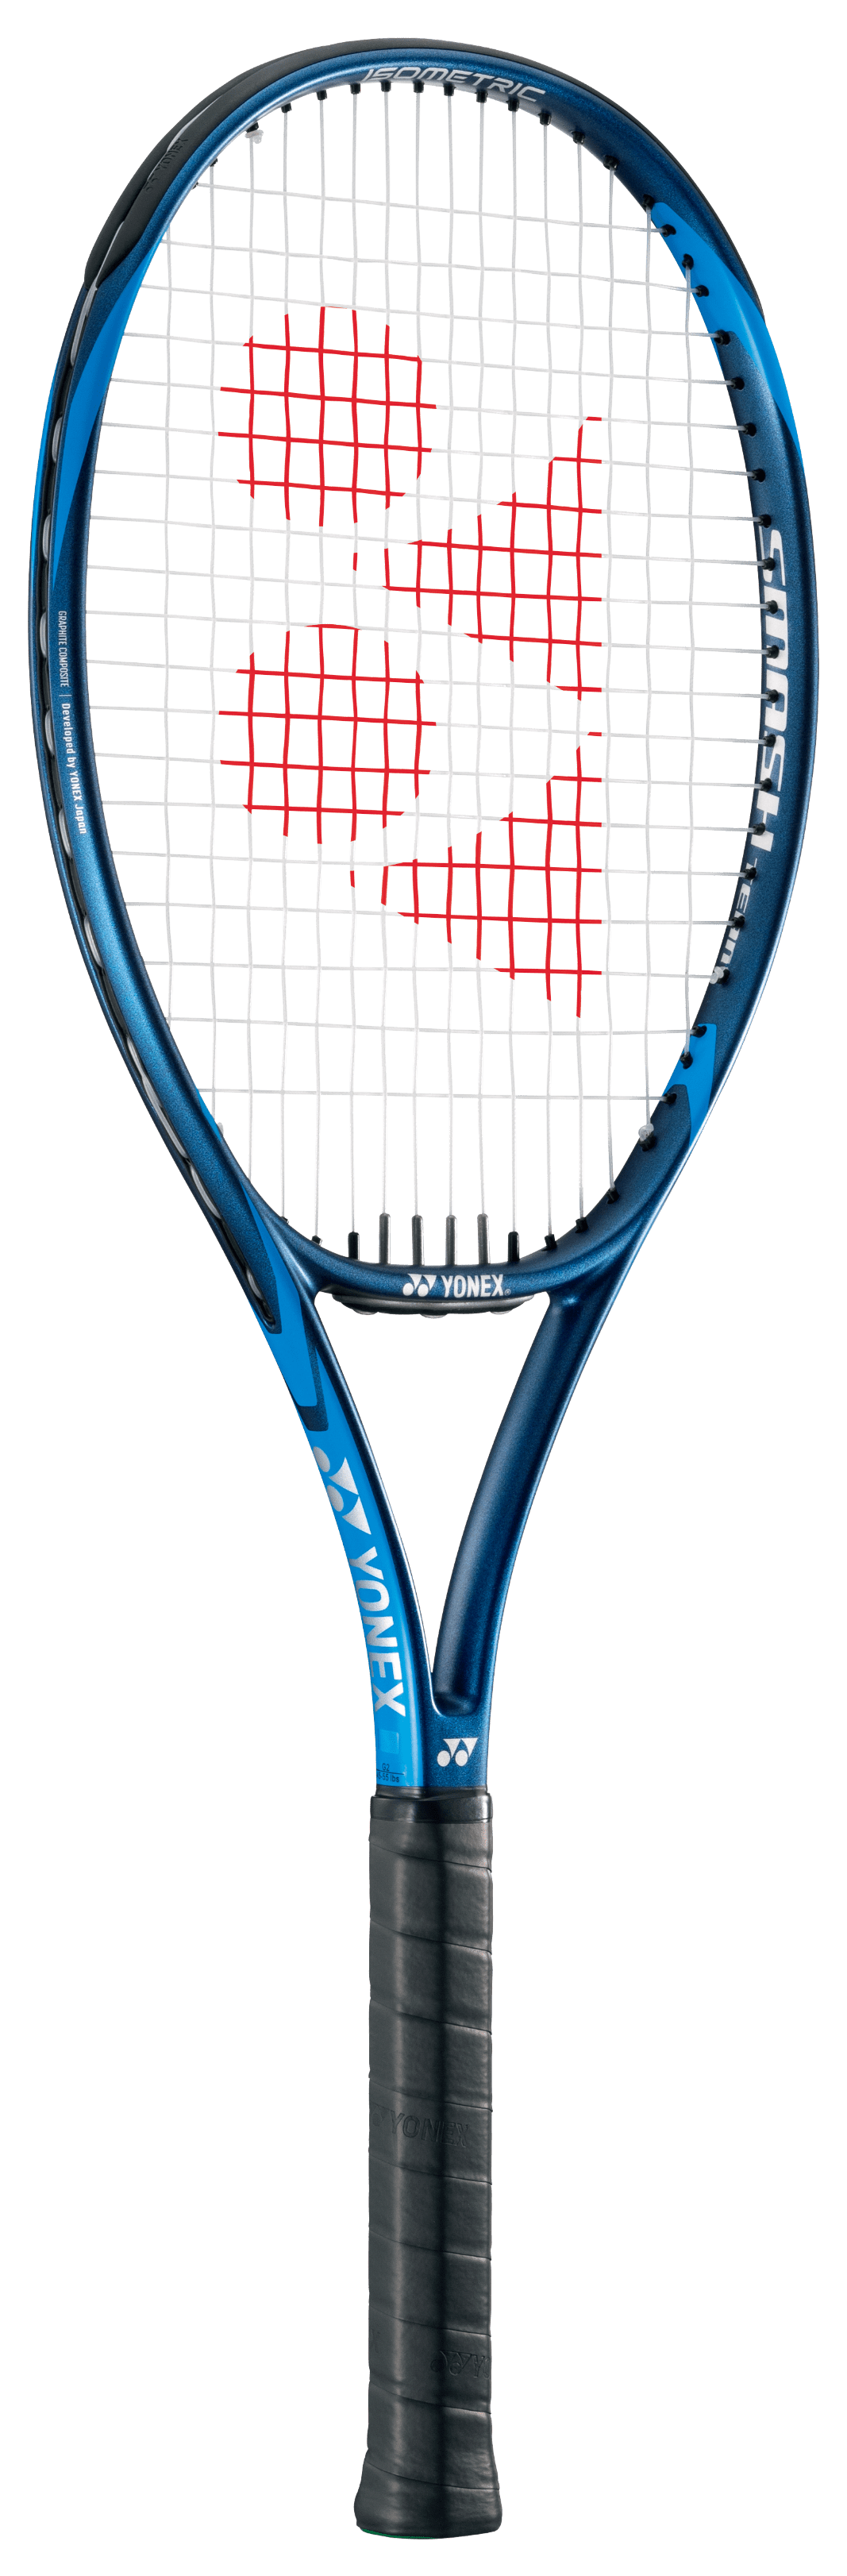 Tennis Equipment & Gear